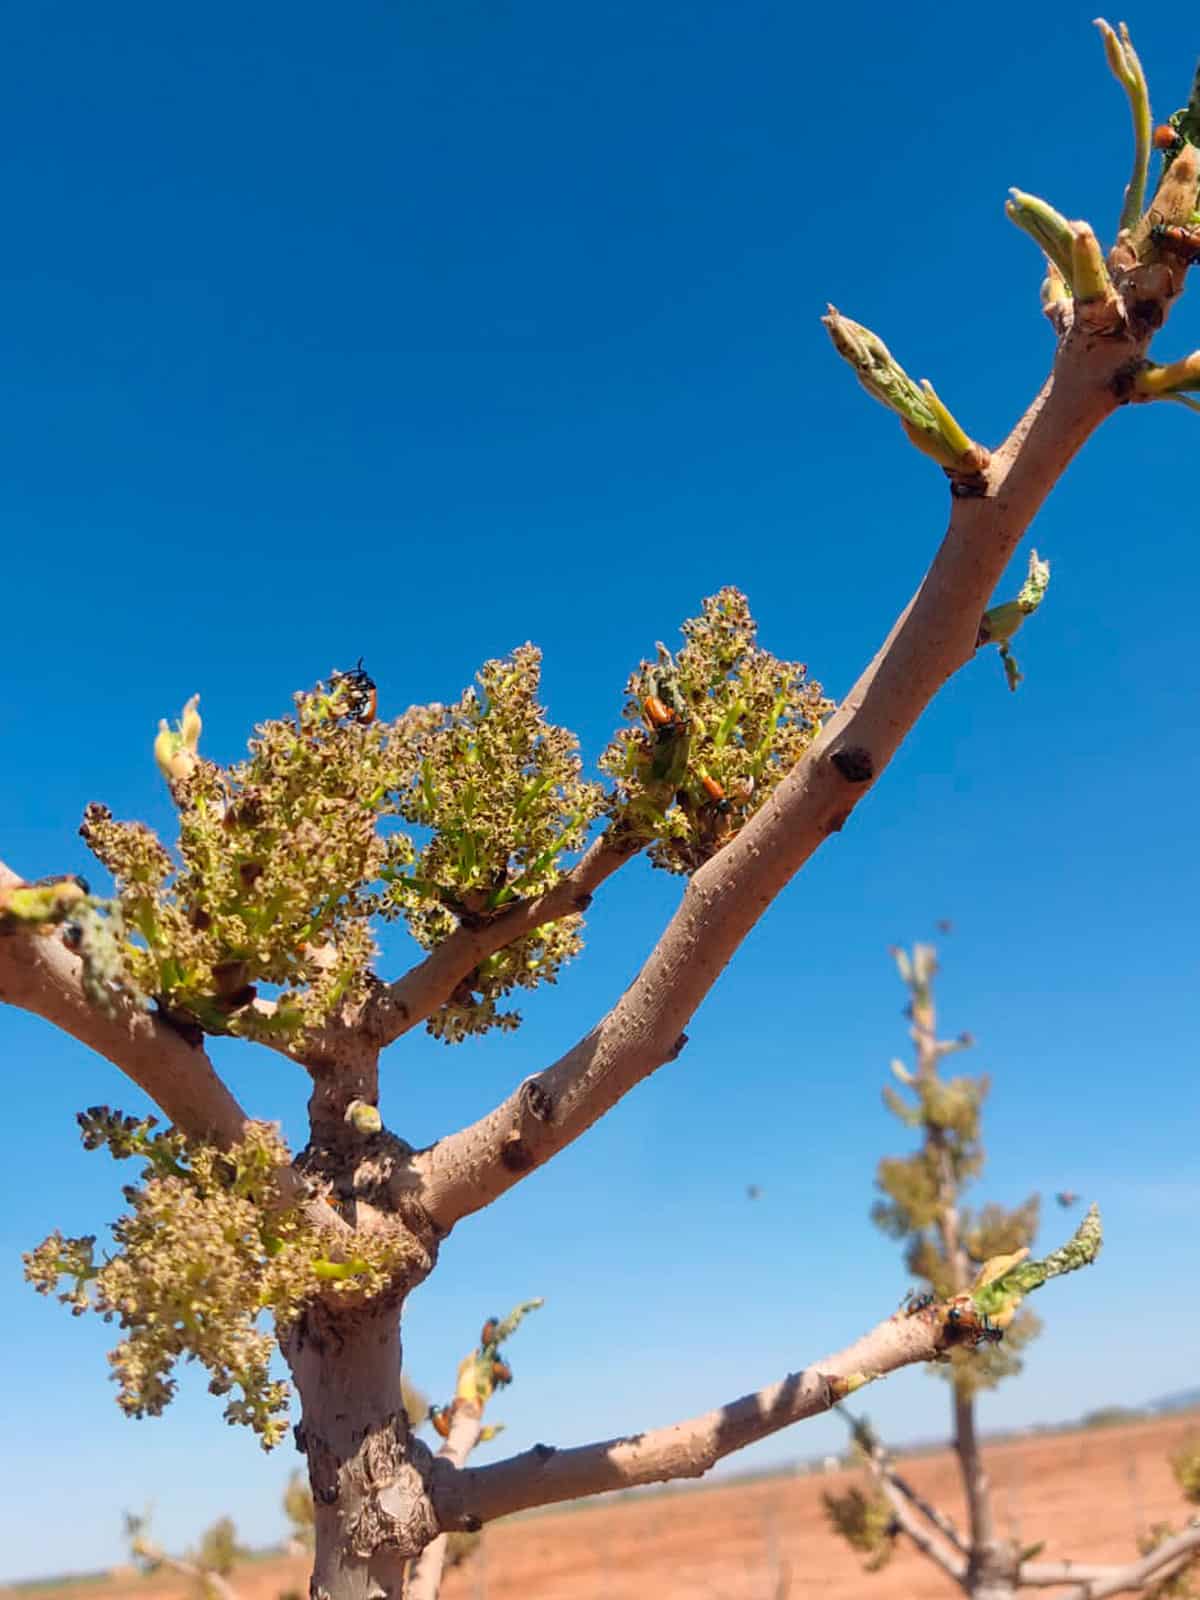 Immagine di dettaglio di un giovane albero di pistacchio infestato da Galeruca o Clytra.